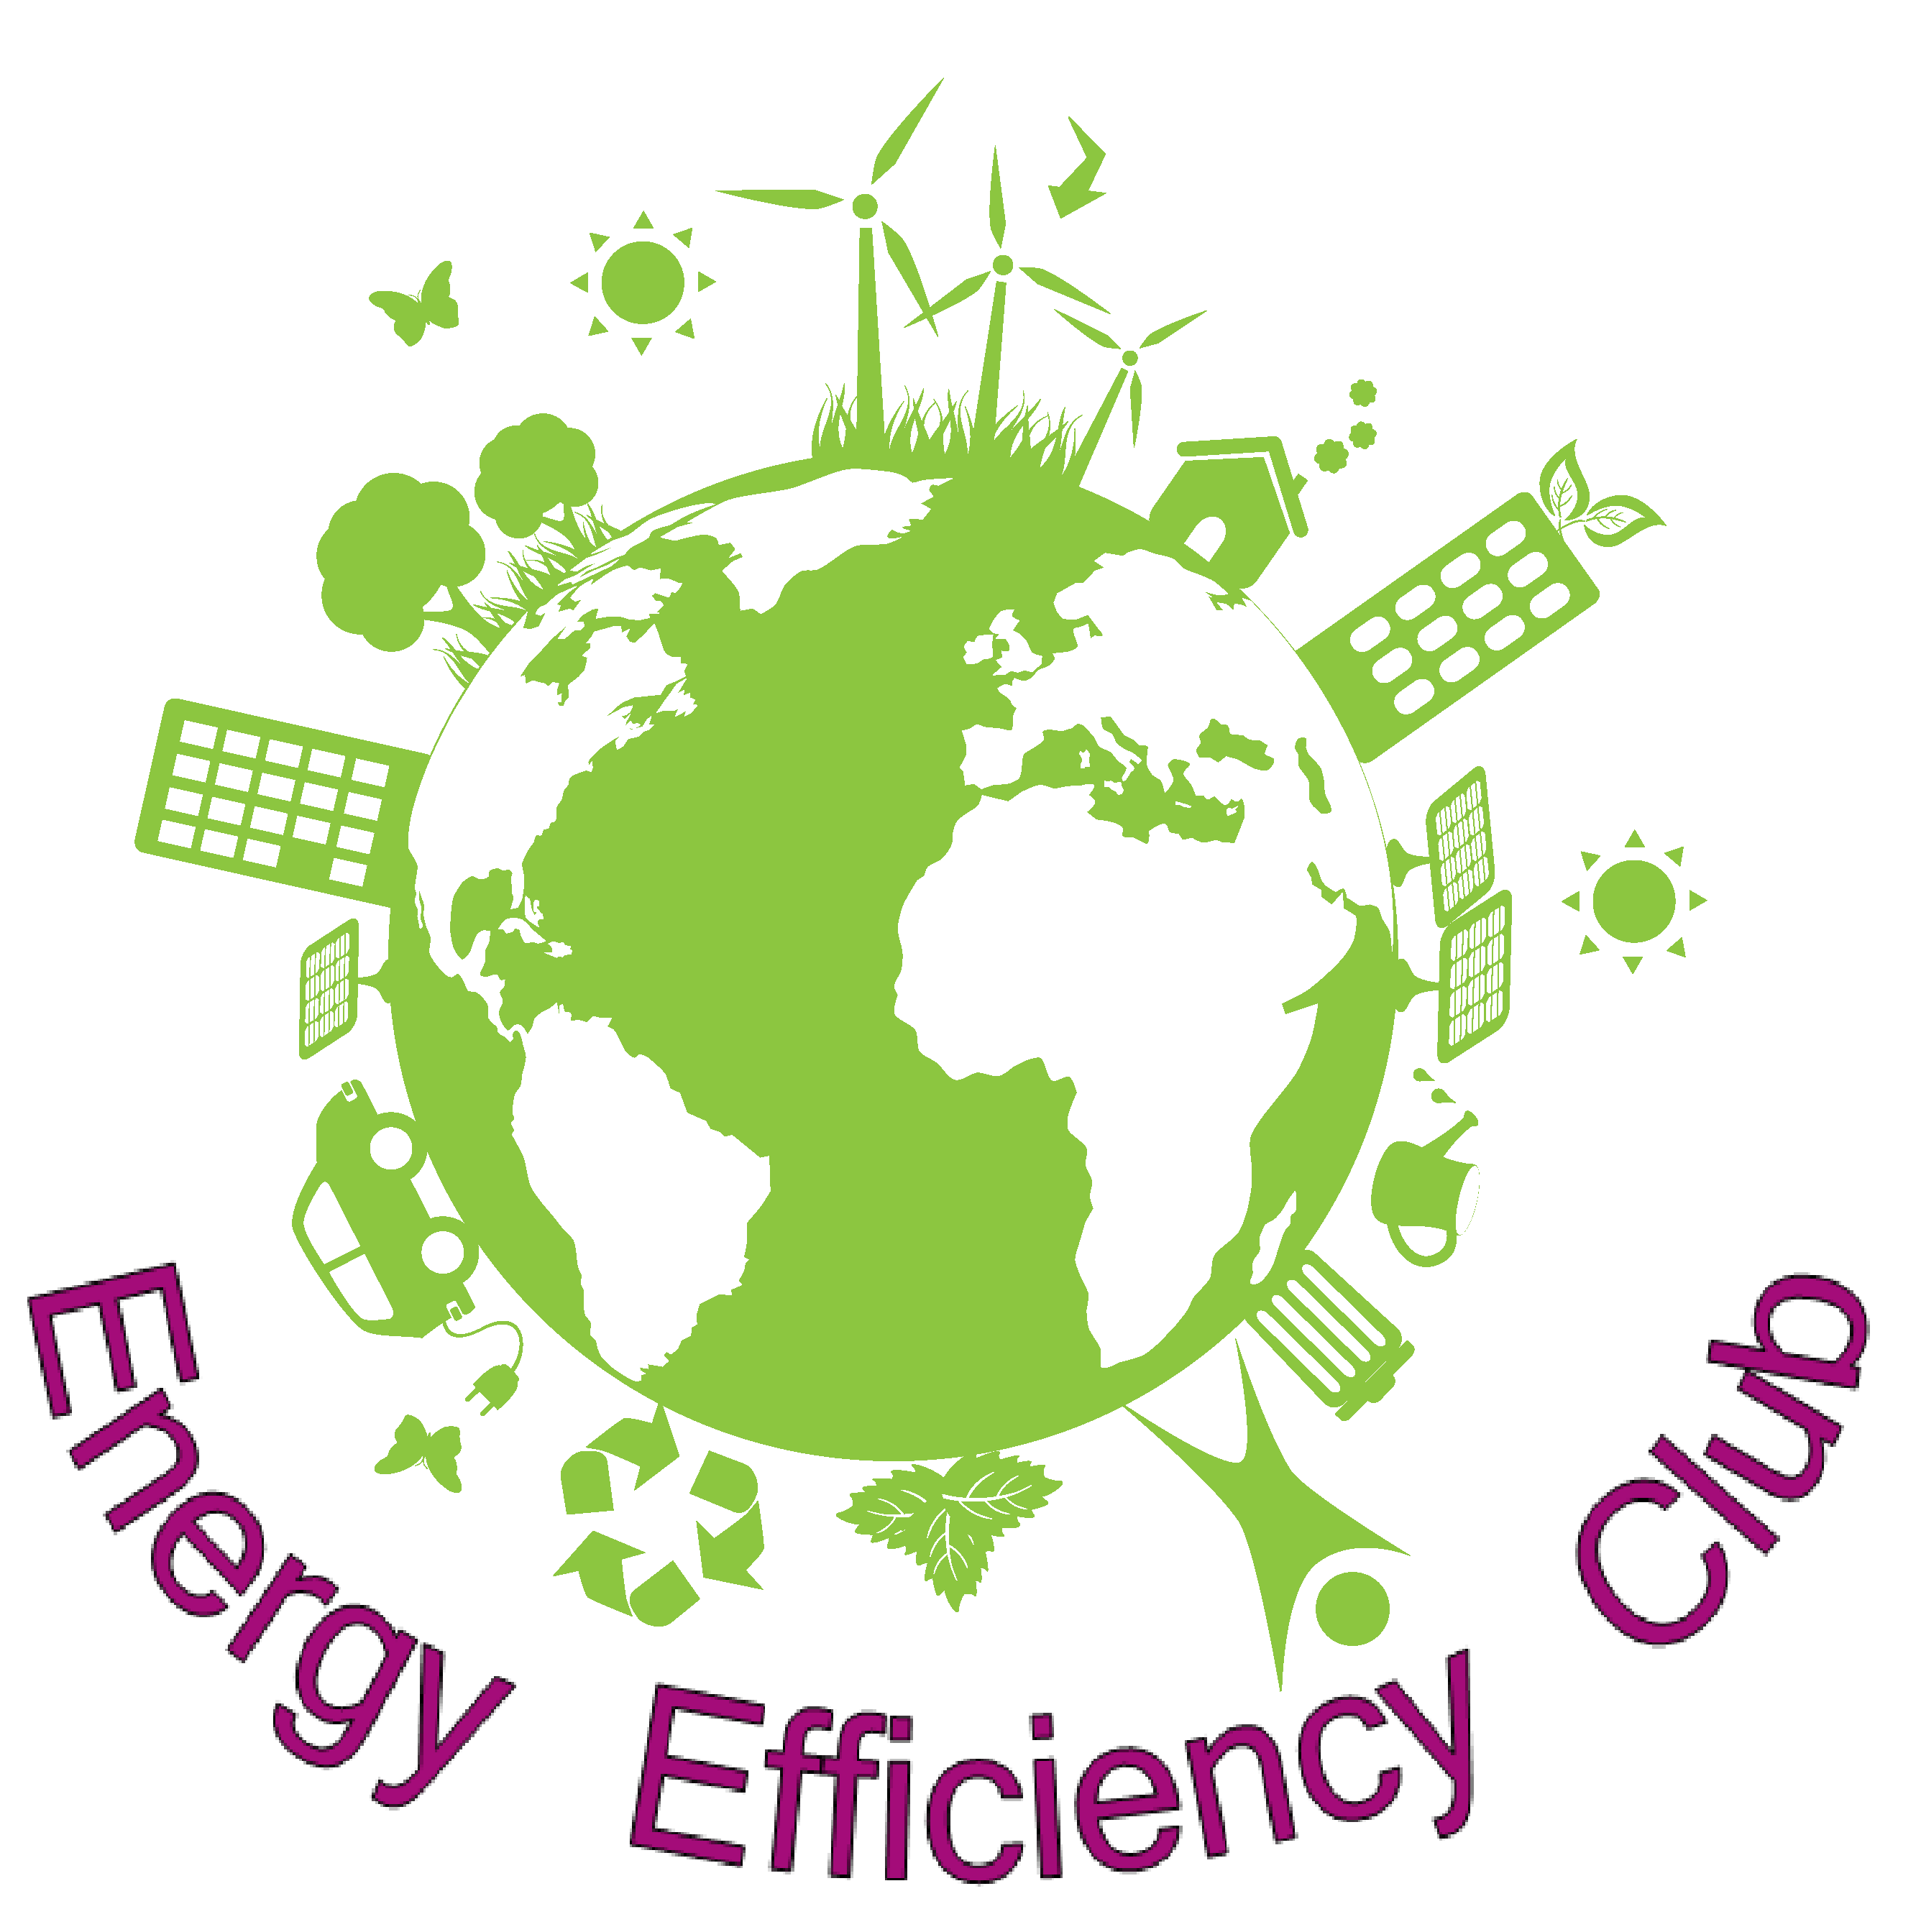 25.Energy Efficiency Club